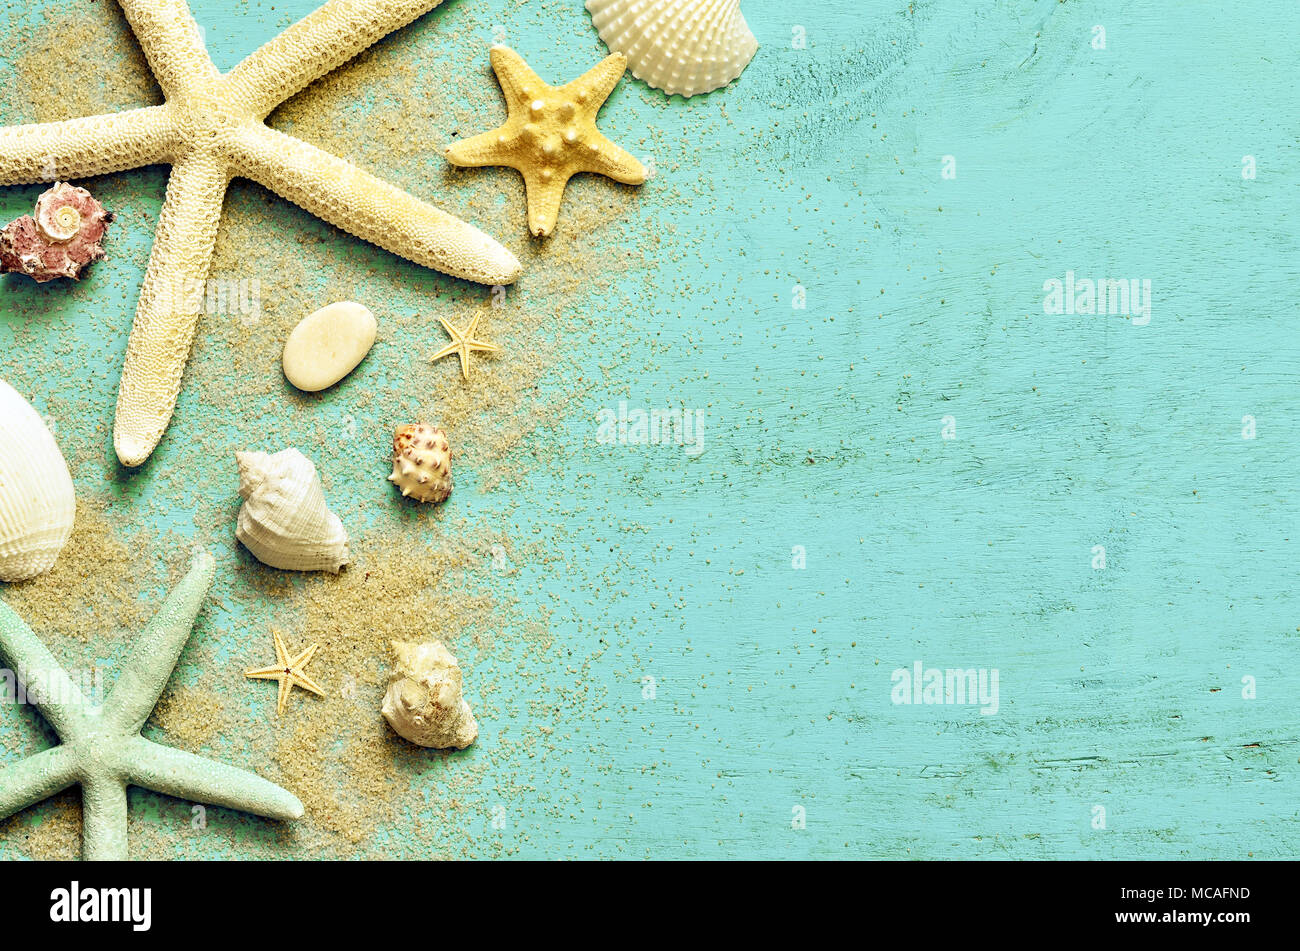 Fondo de estrellas de mar fotografías e imágenes de alta resolución - Alamy